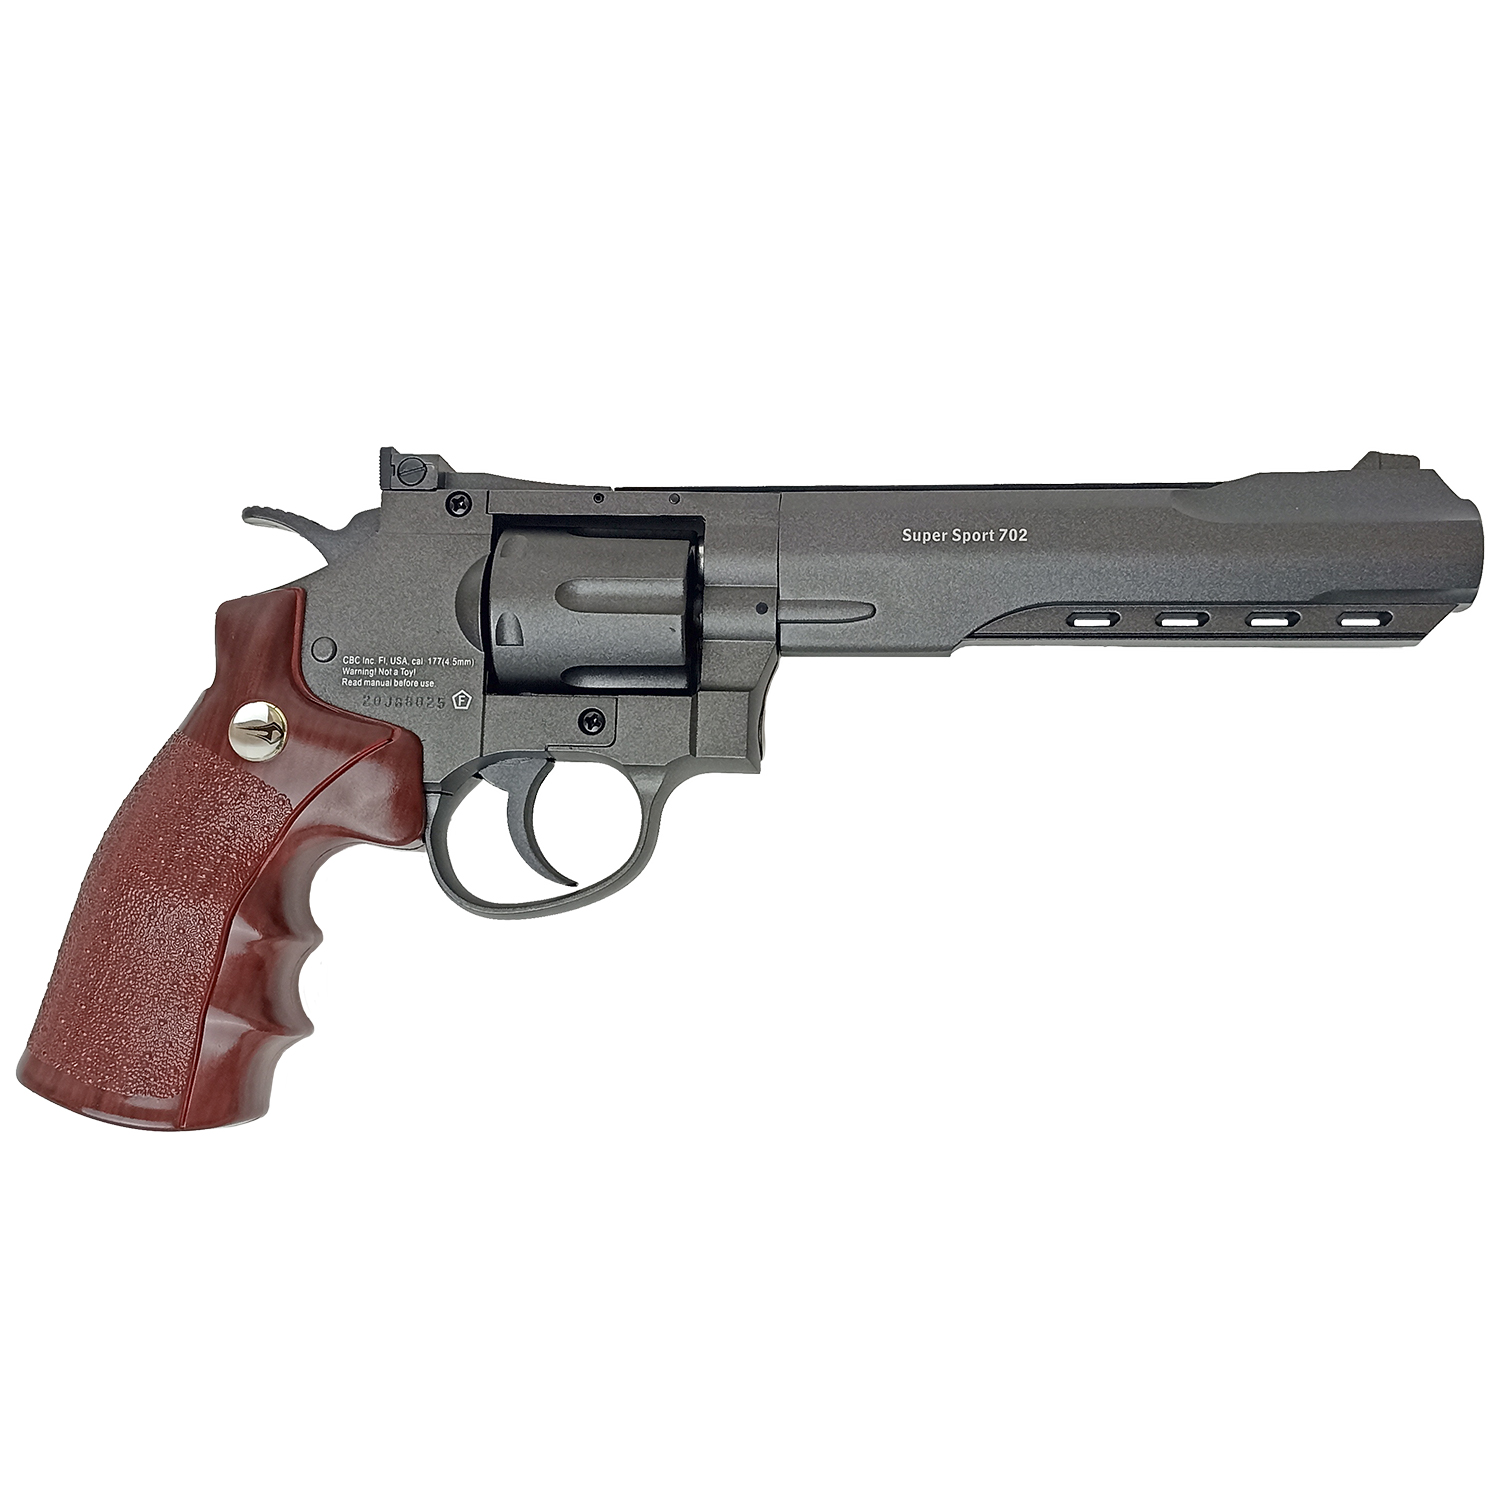 Пневматический револьвер Borner Super Sport 702 (Smith&Wesson), калибр 4,5 мм